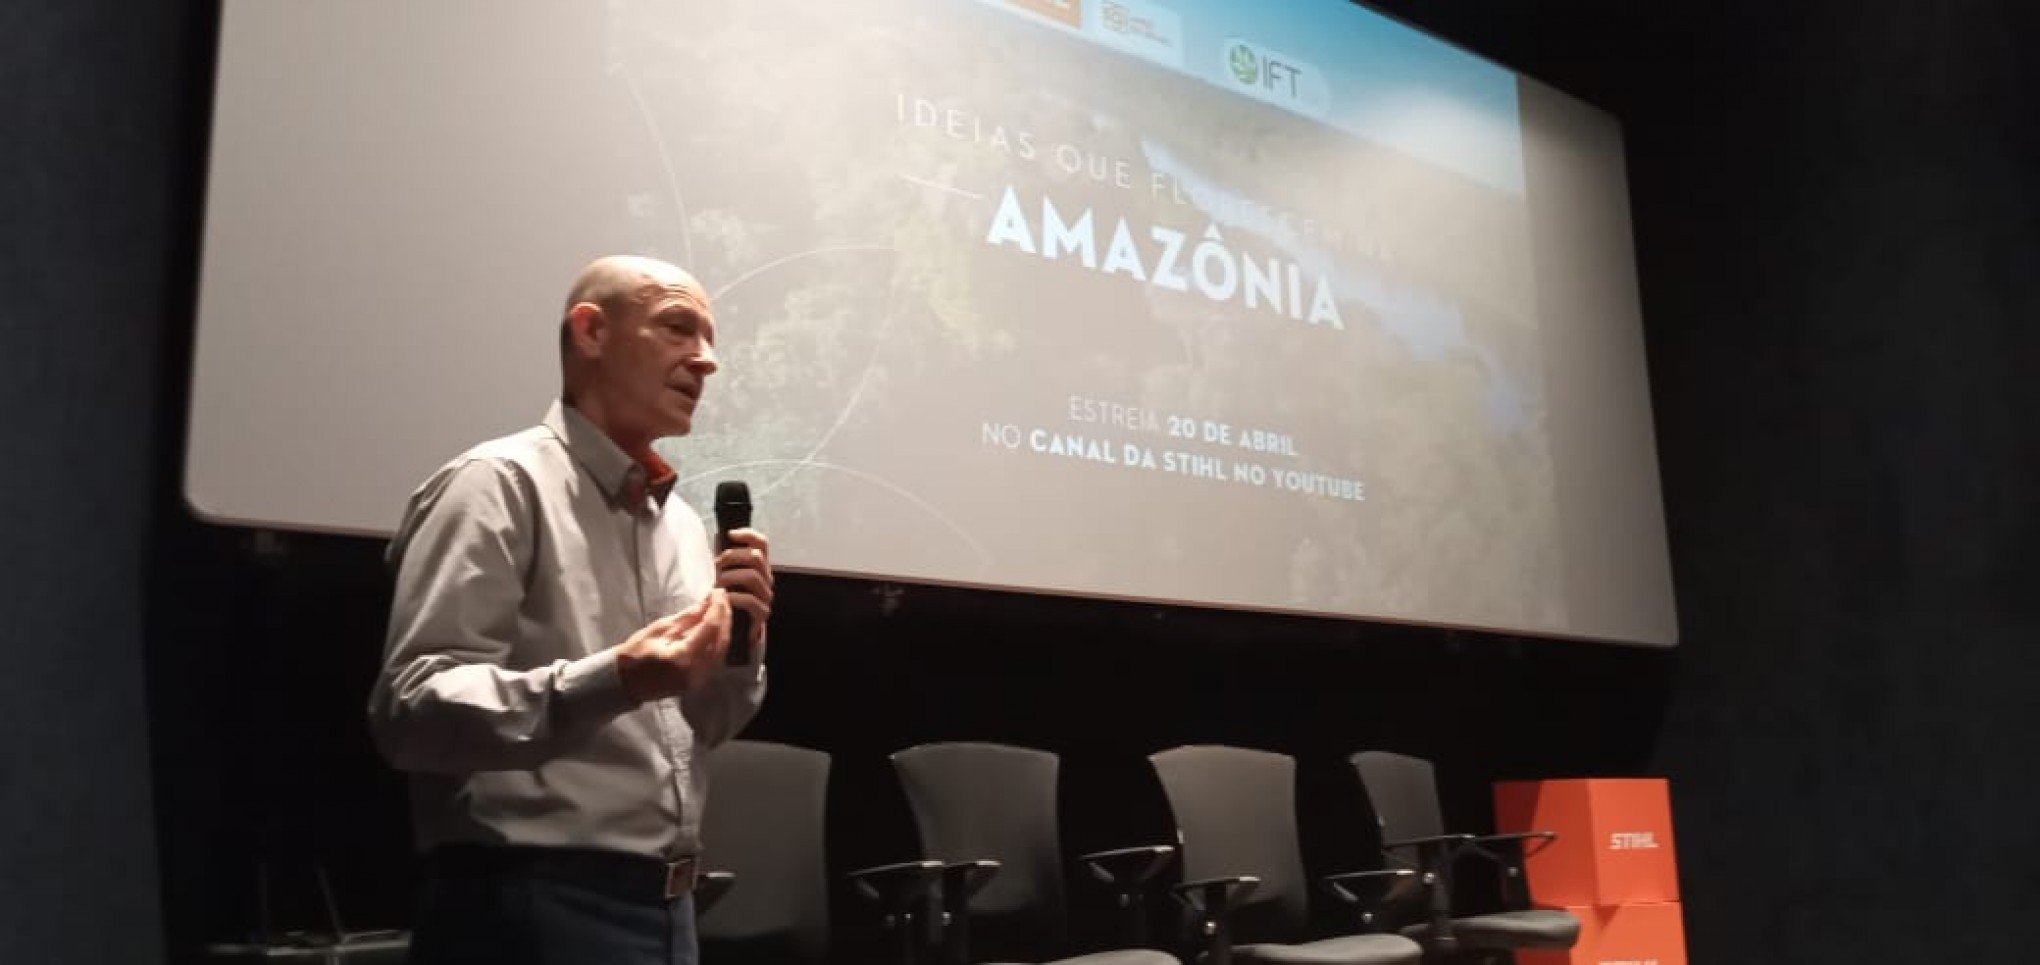 Stihl estreia websérie sobre manejo florestal sustentável na região amazônica